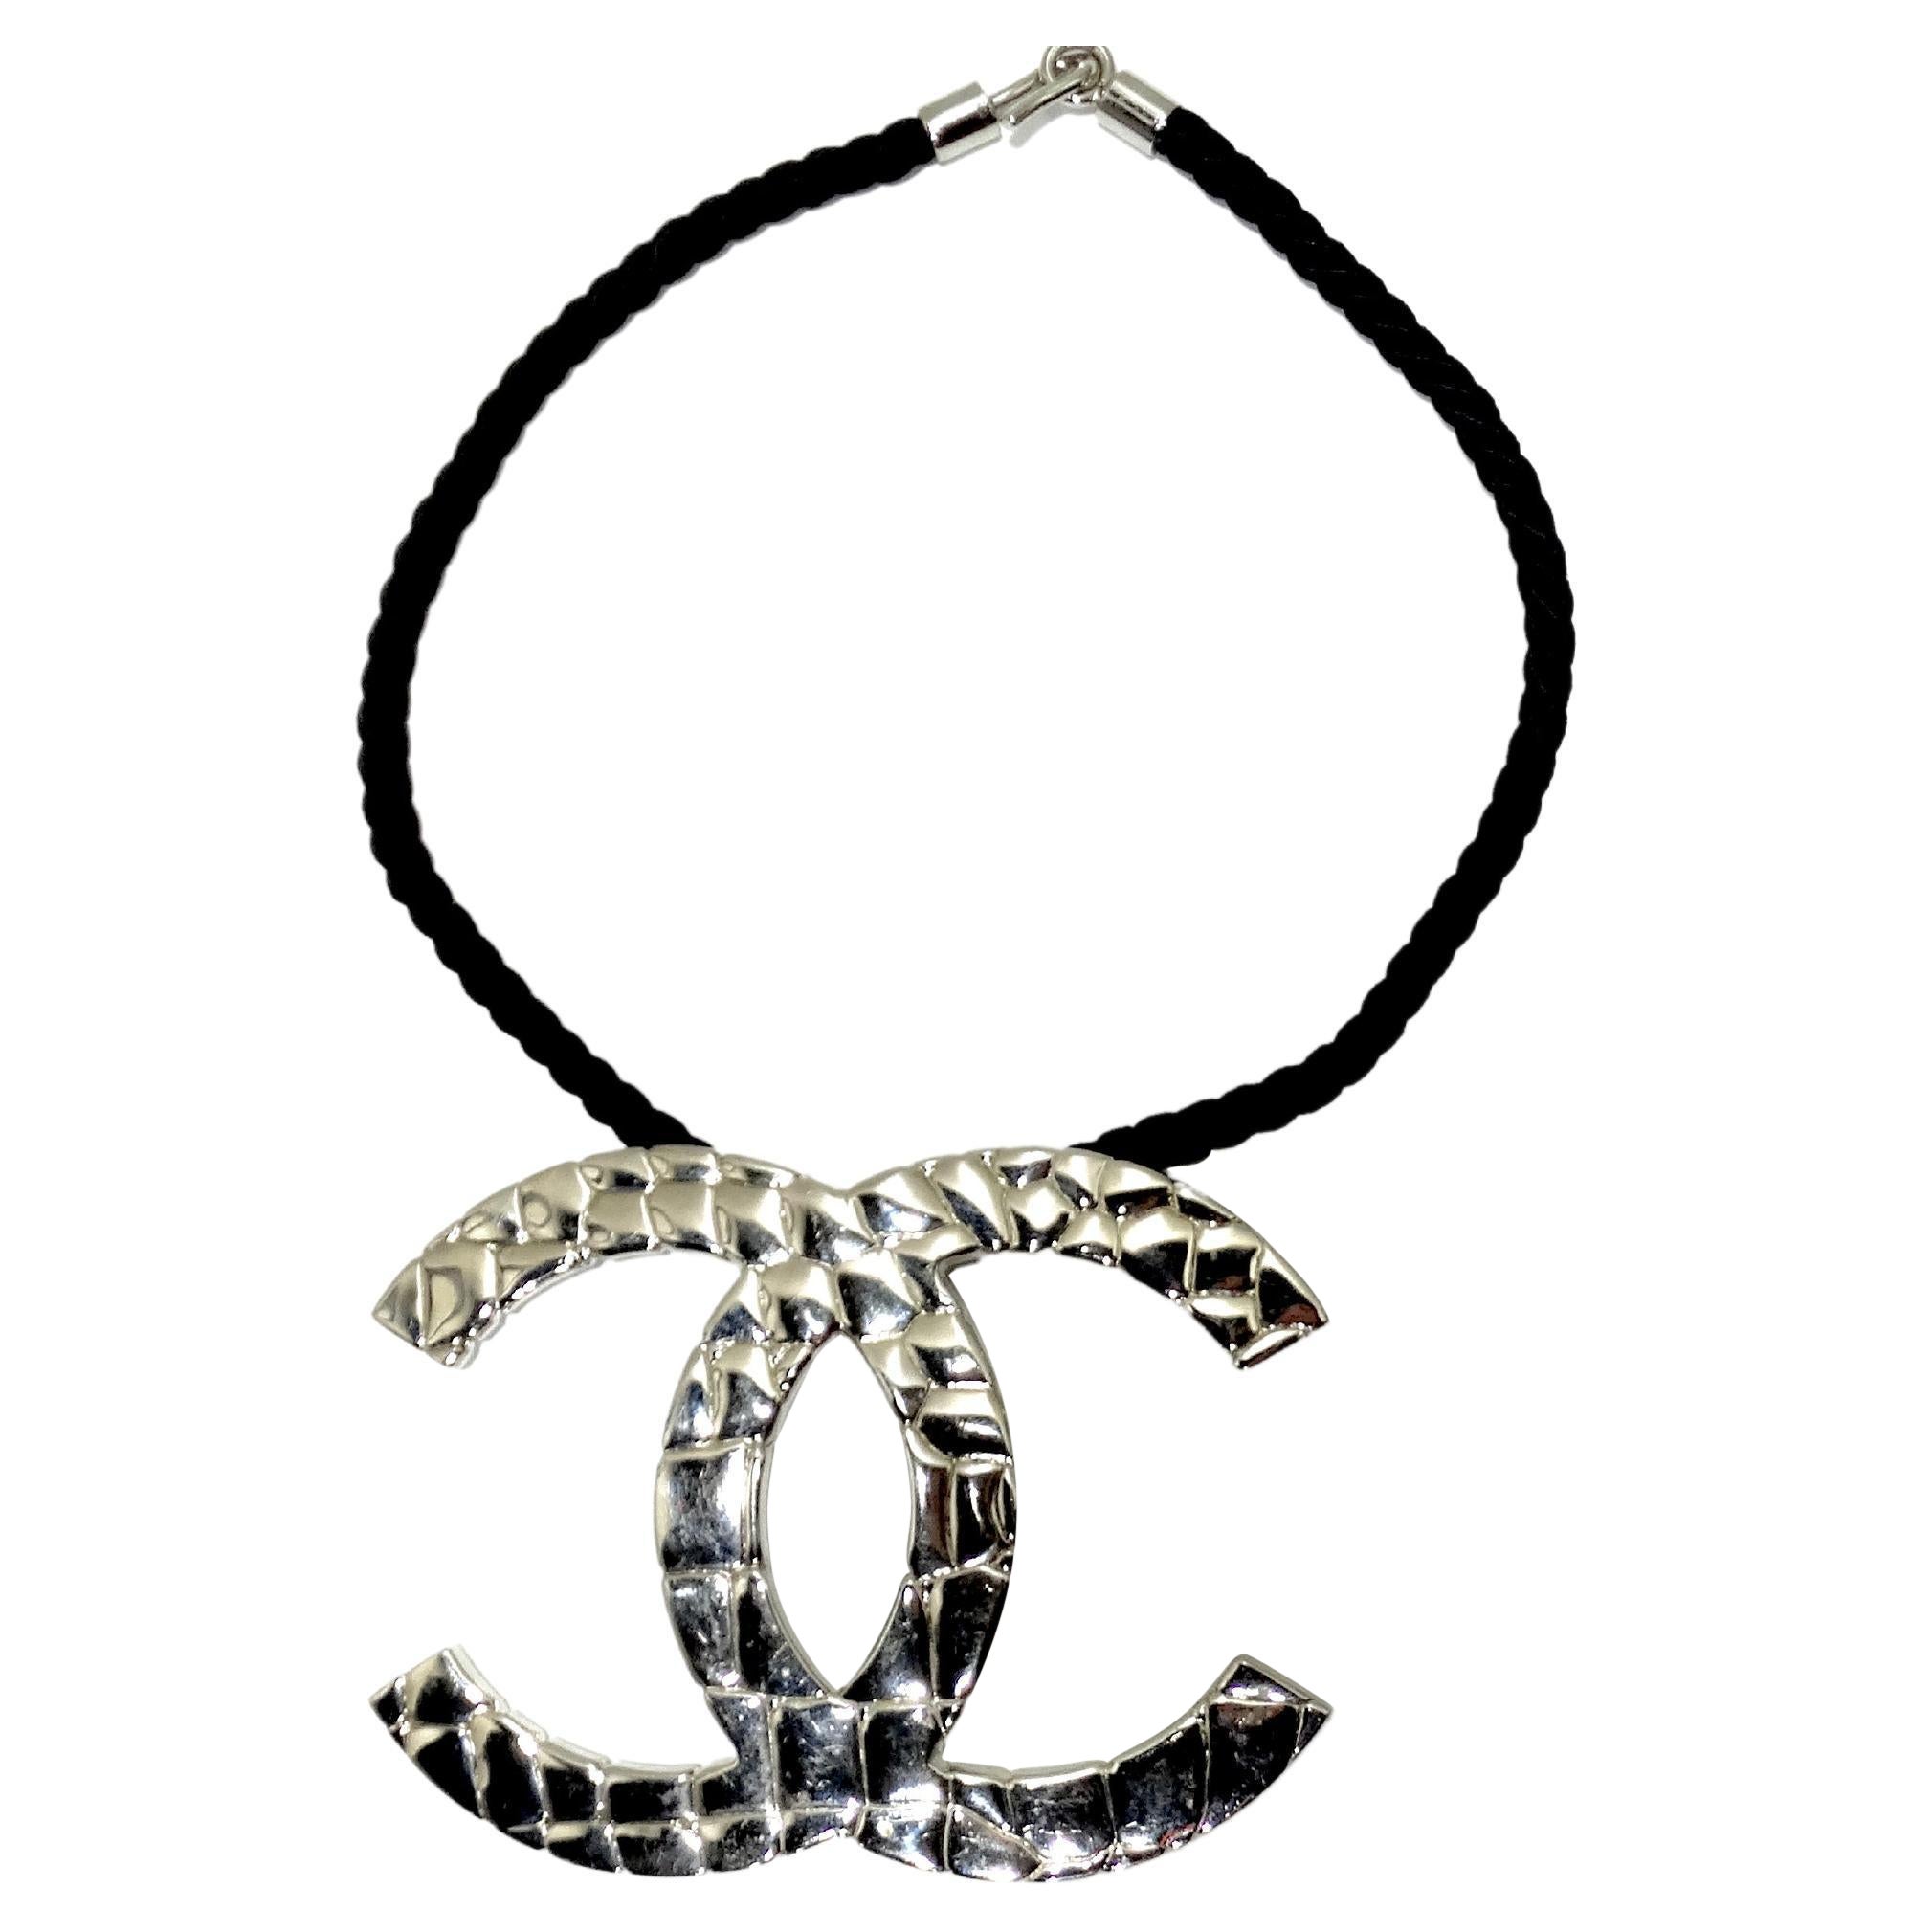 Mua Dây Chuyền Nữ Chanel Dạng Chuỗi Necklace Màu Trắng Bạc  Chanel  Mua  tại Vua Hàng Hiệu h092918